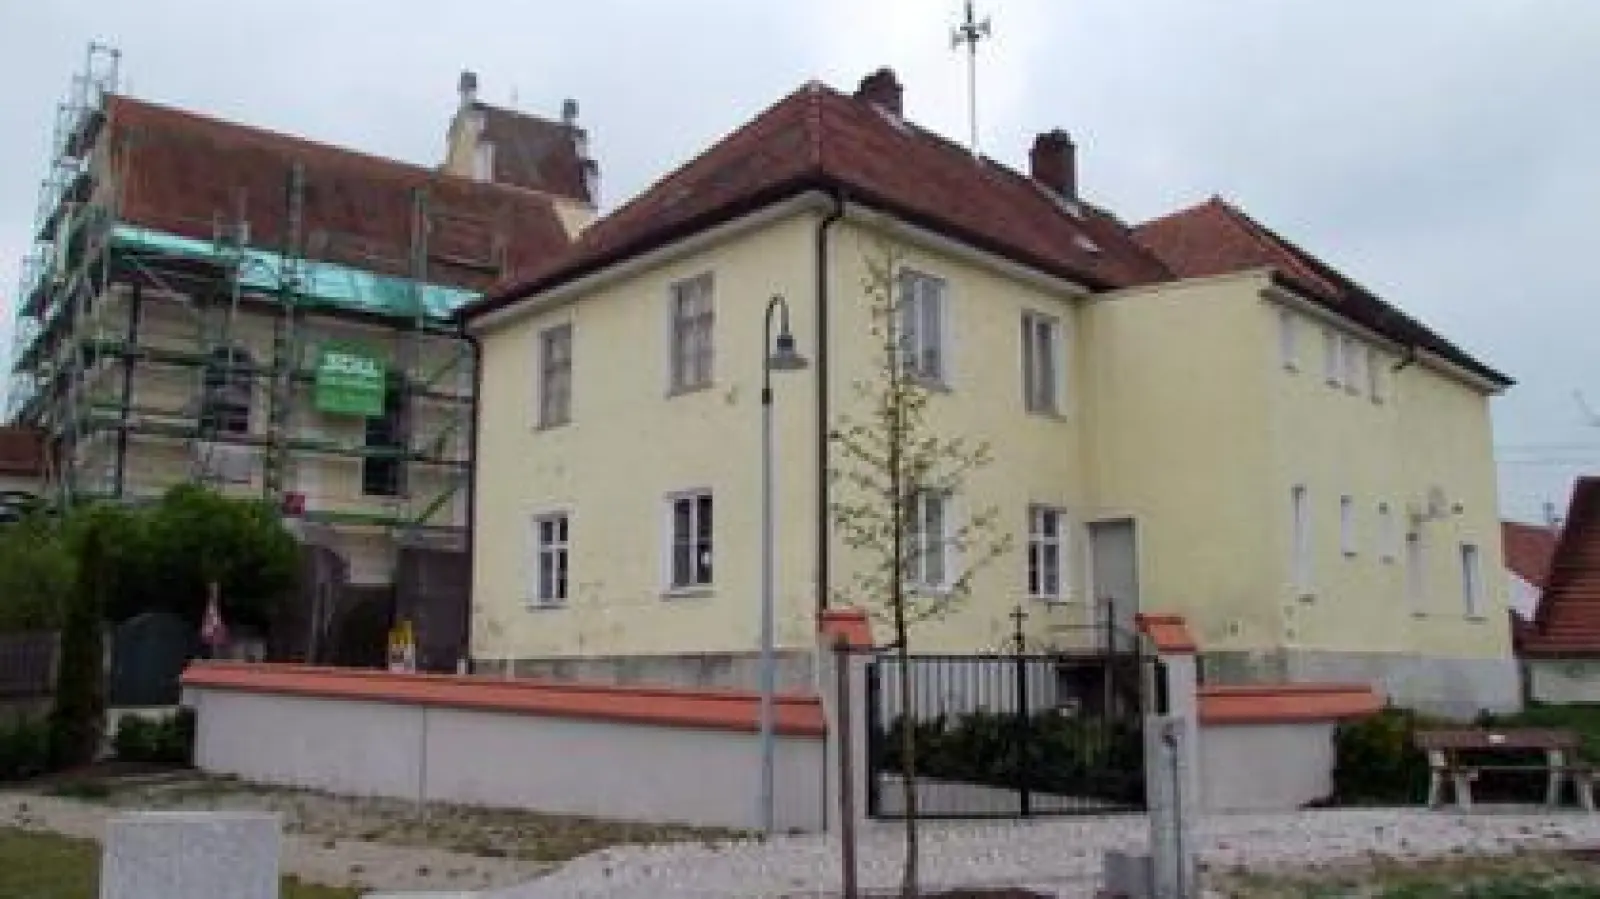 Das Gebenhofener Schulgebäude  stammt aus dem Jahr 1859. Jetzt soll es saniert werden, um der Dorfgemeinschaft ein Domizil zu bieten. Bis 1970 wurden in dem Haus Schüler unterrichtet.